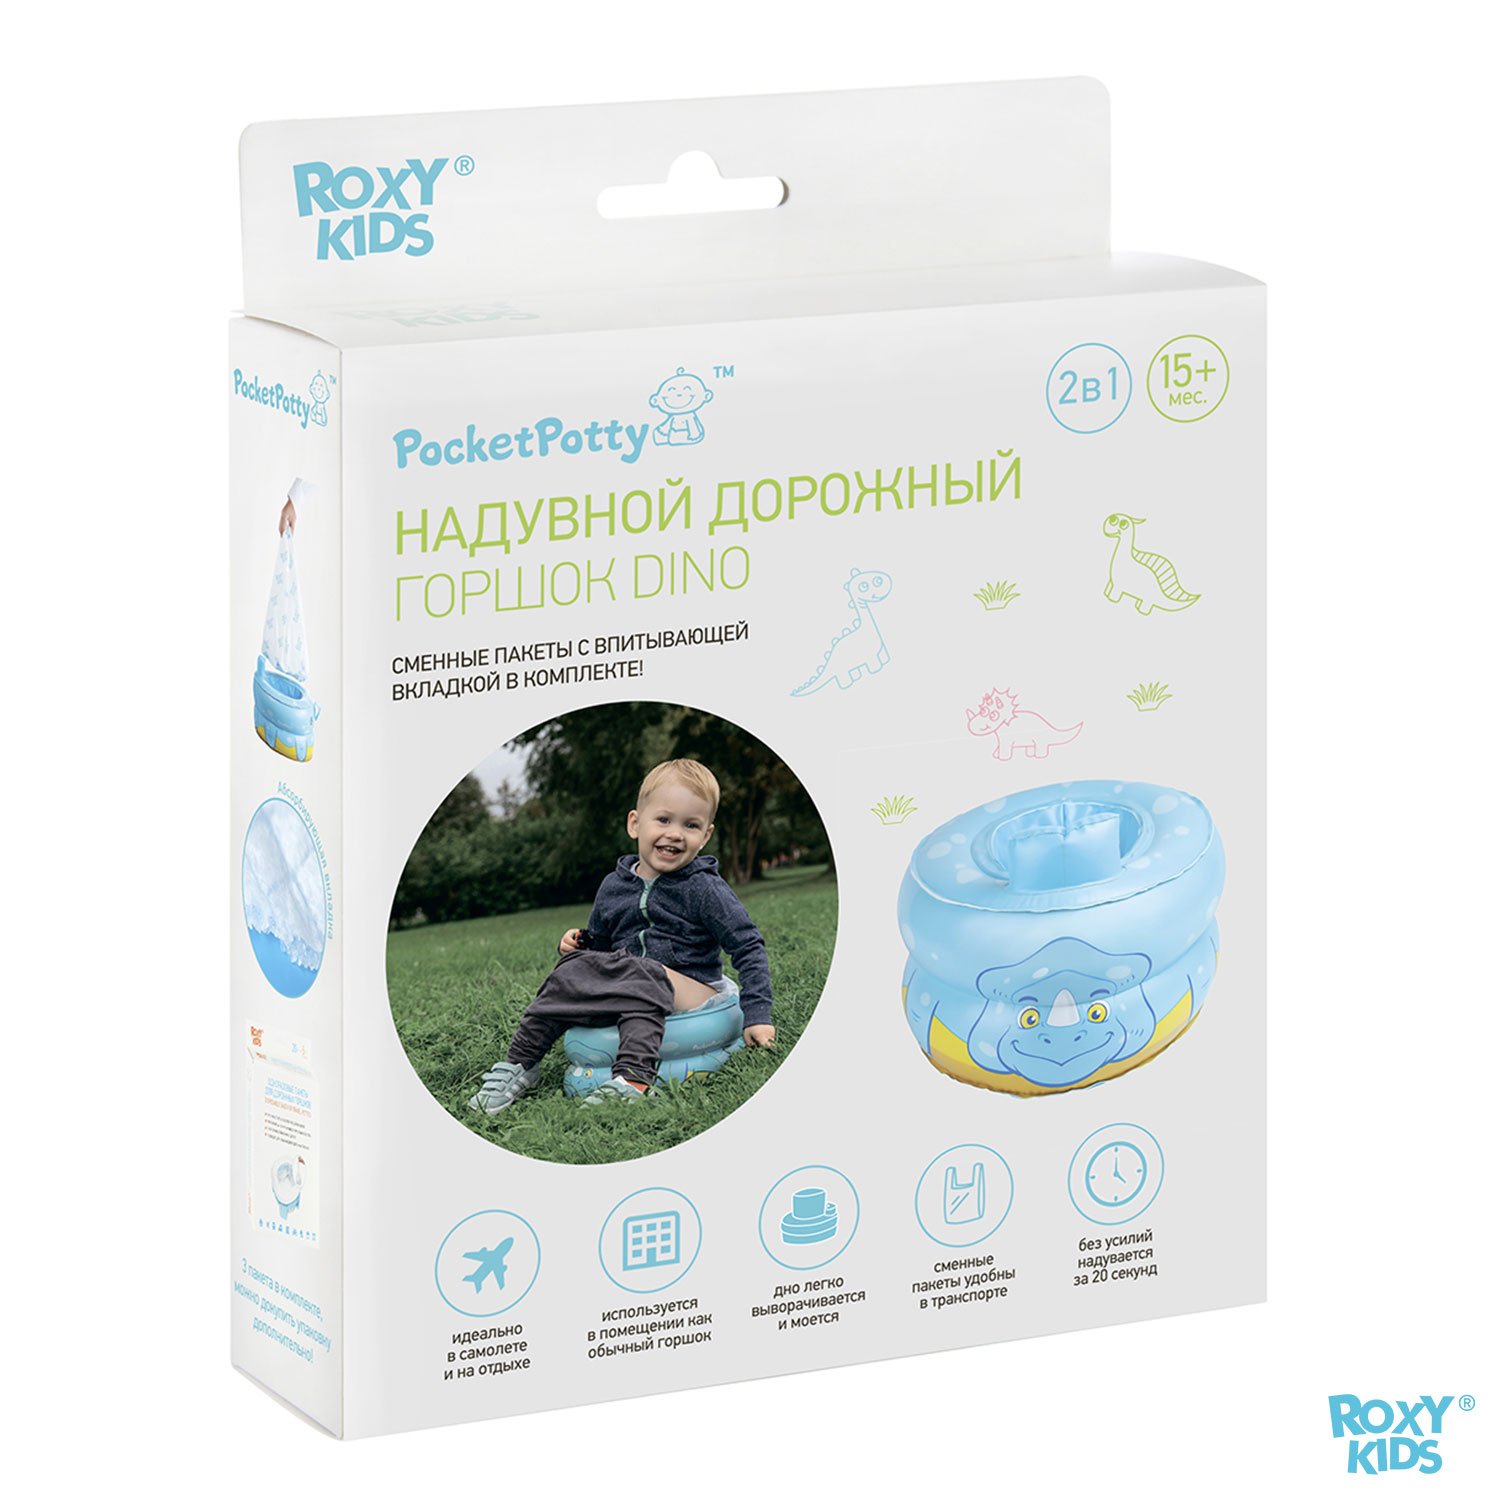 Горшок дорожный ROXY-KIDS надувной для детей PocketPotty Динозавр цвет голубой - фото 8